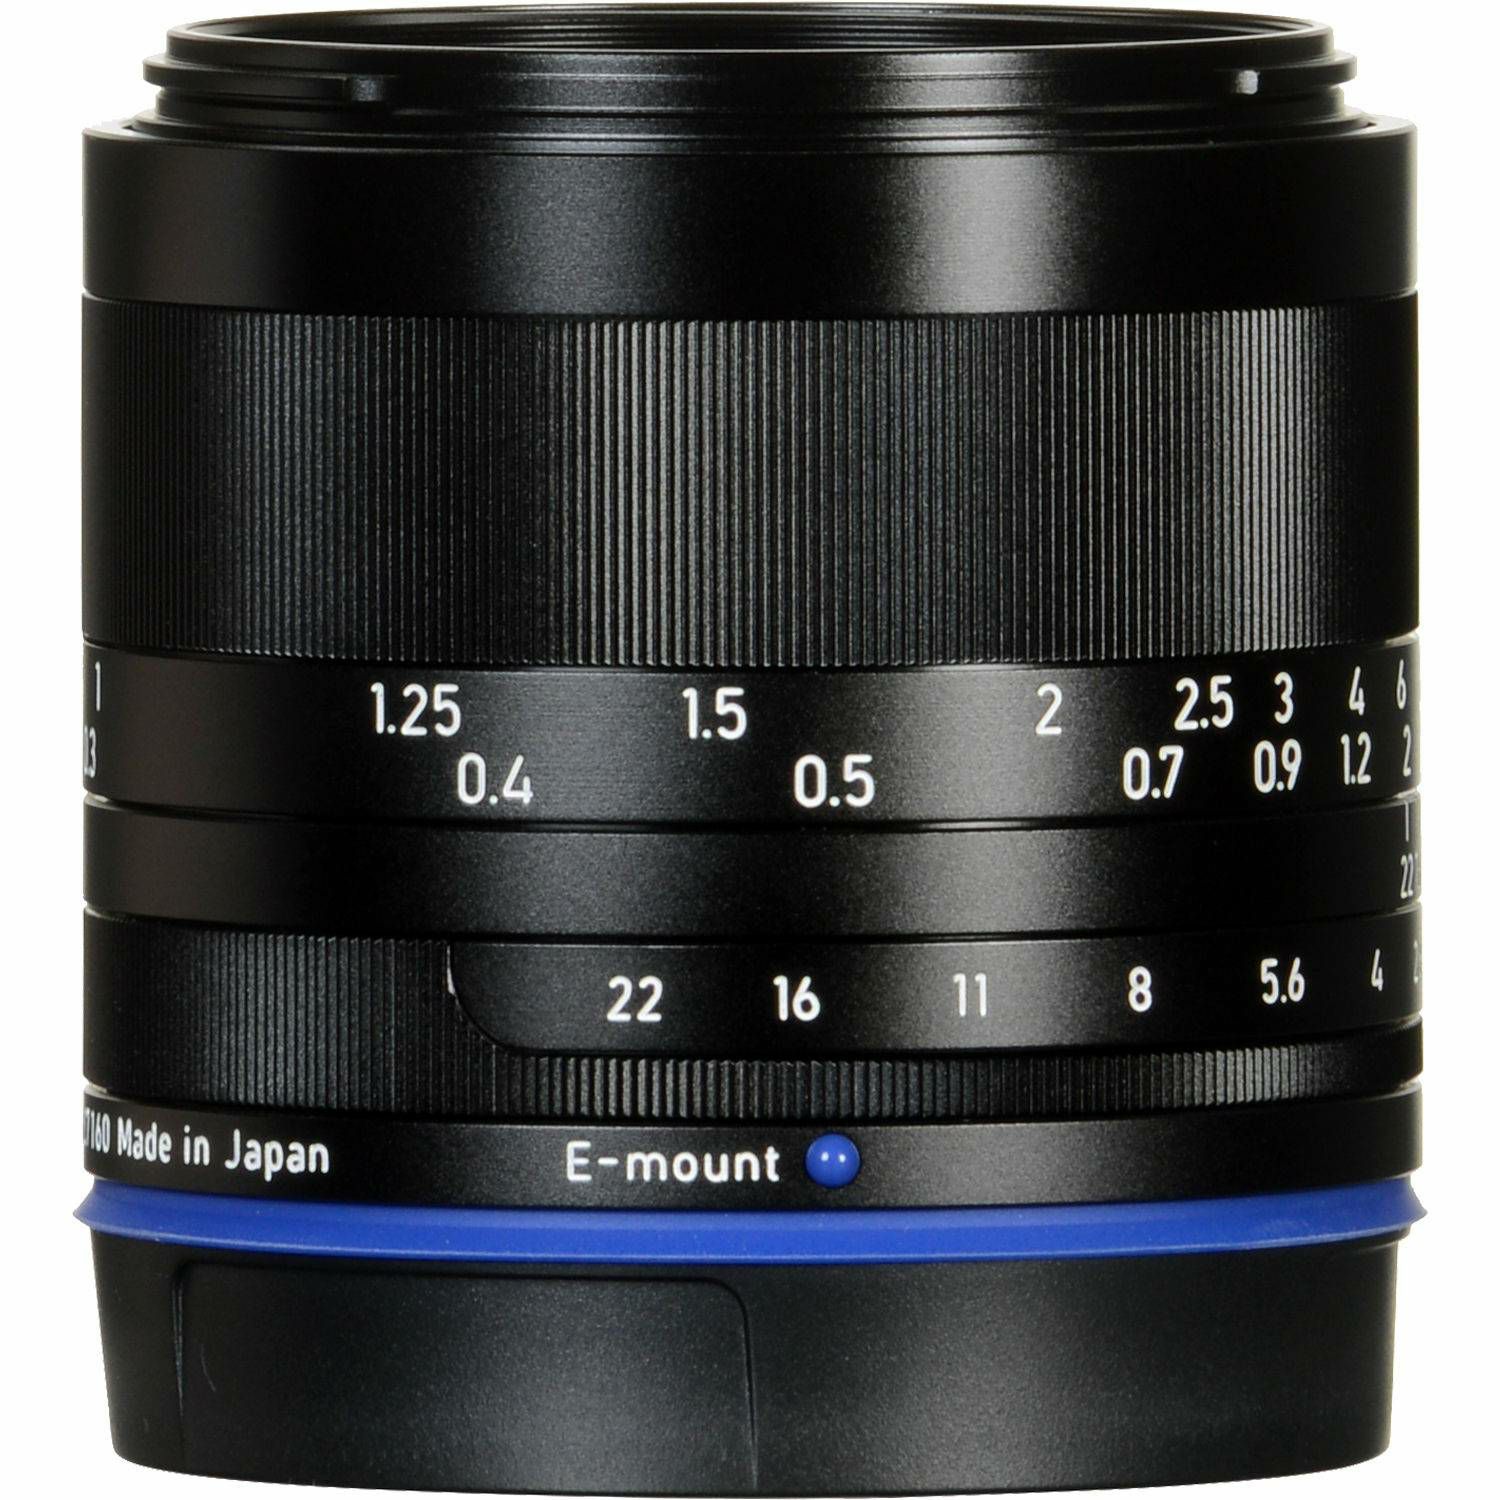 Zeiss Loxia 35mm f/2 FE širokokutni objektiv za Sony E-mount (2103-749)